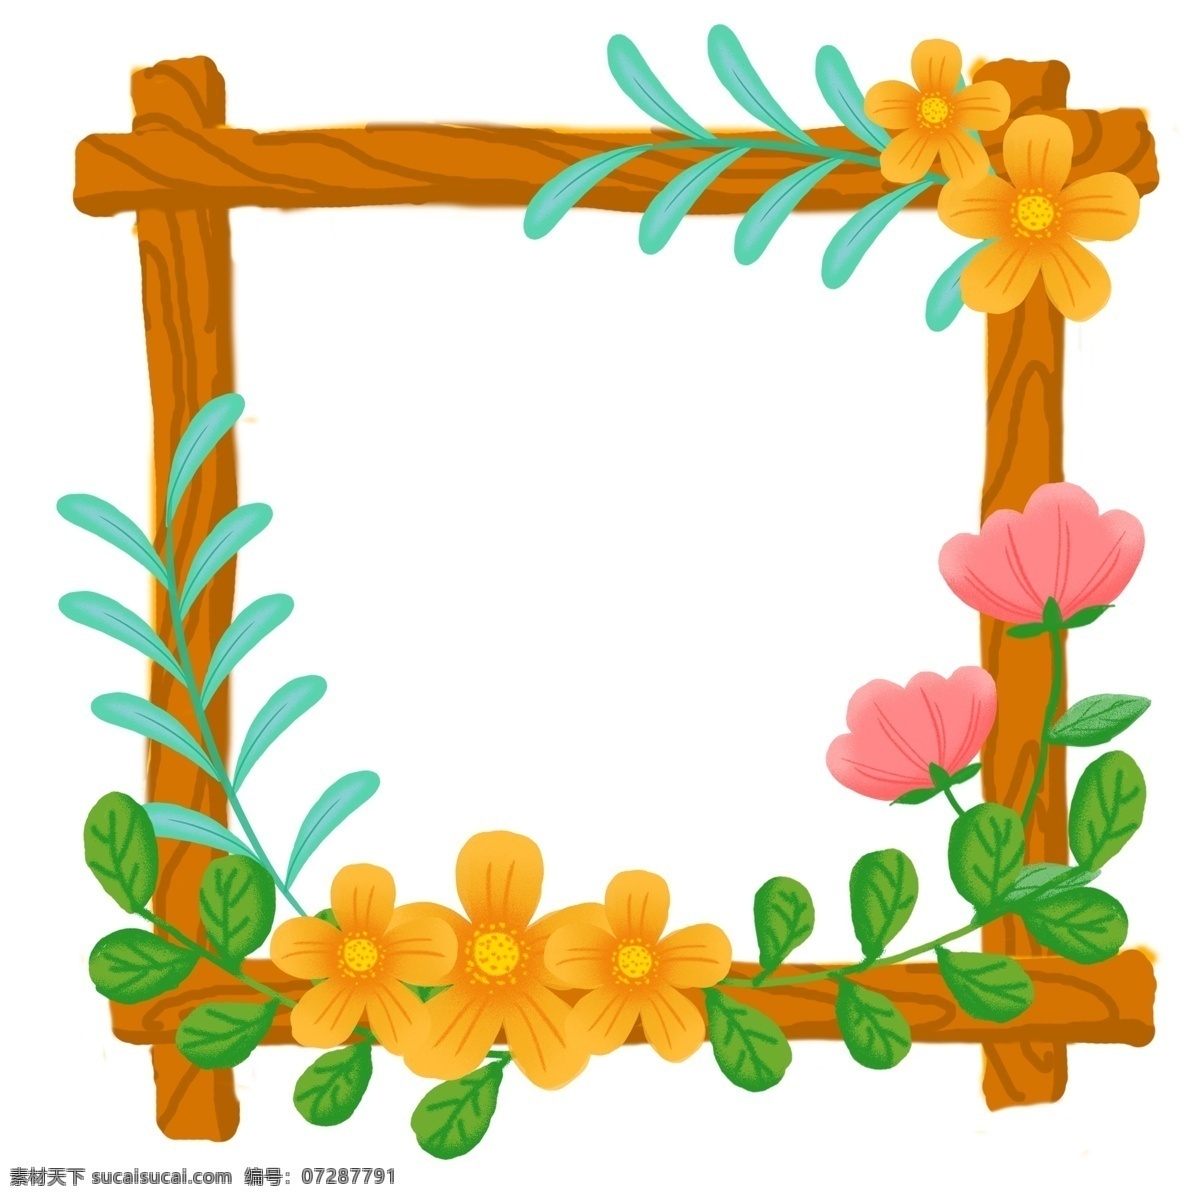 小清 新手 绘 植物 花朵 花卉 枝条 边框 装饰 图案 商业 小清新 手绘 商用